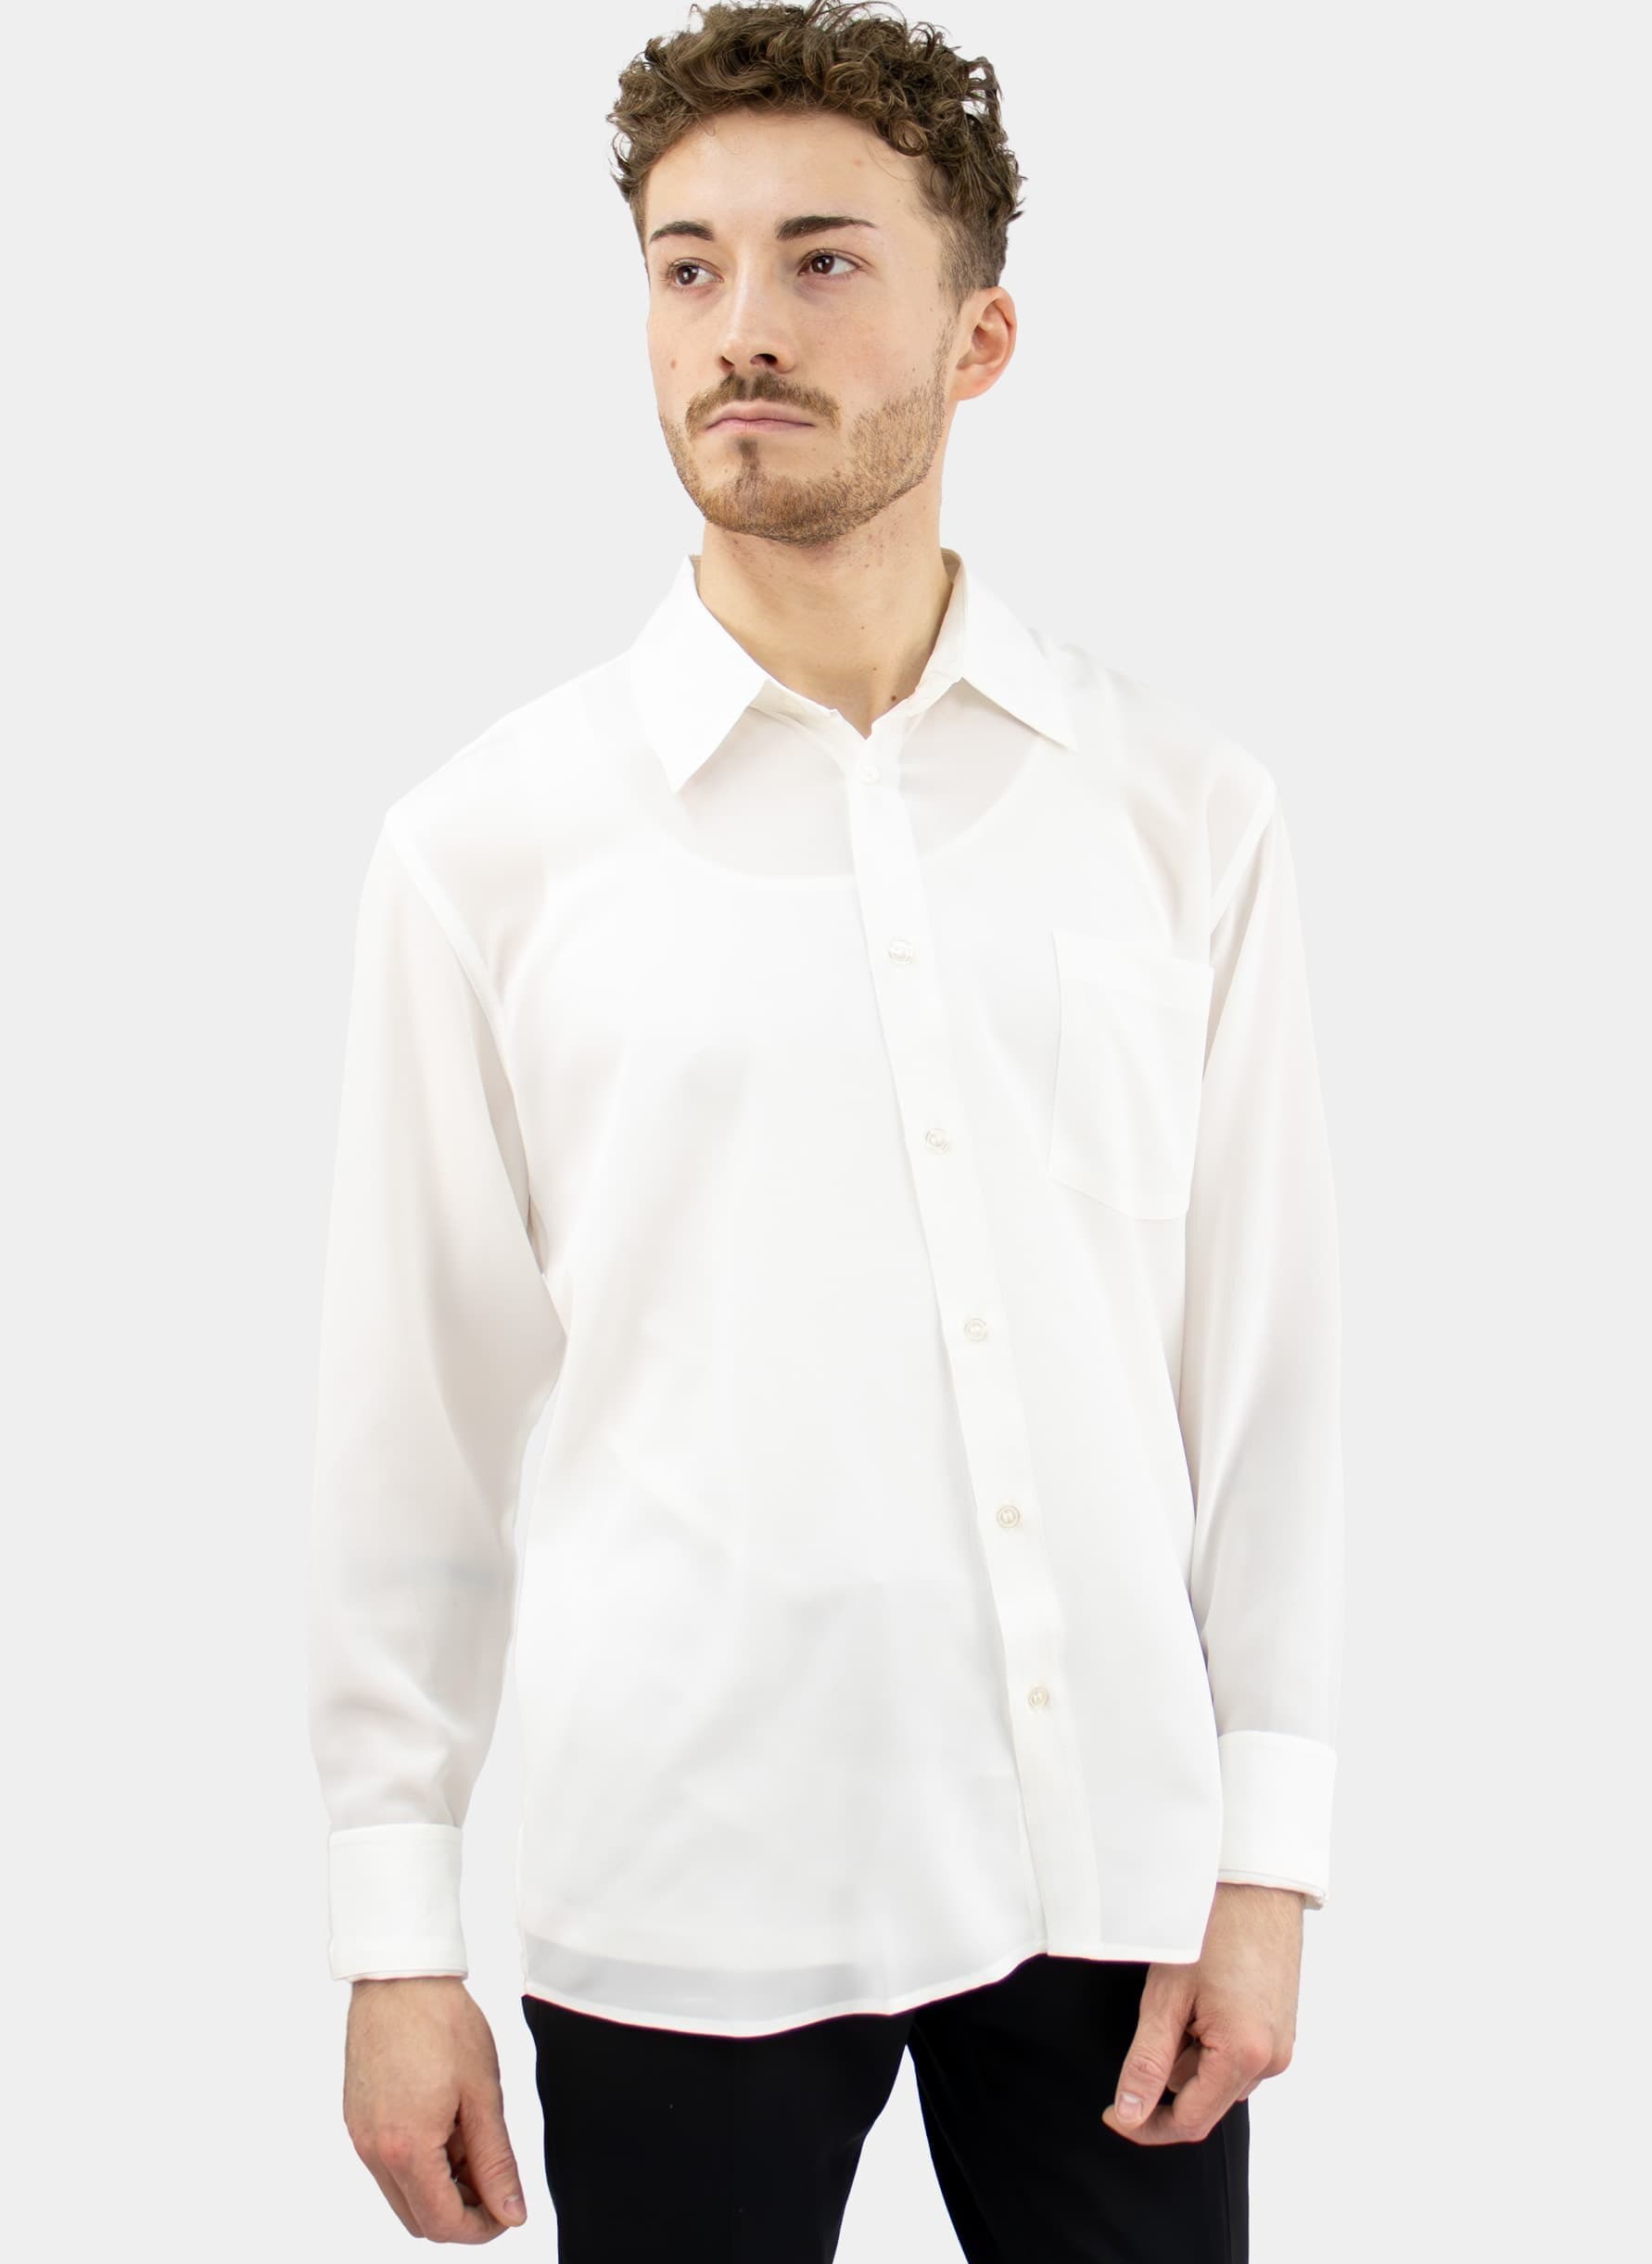 Men's silk shirt long sleeve white